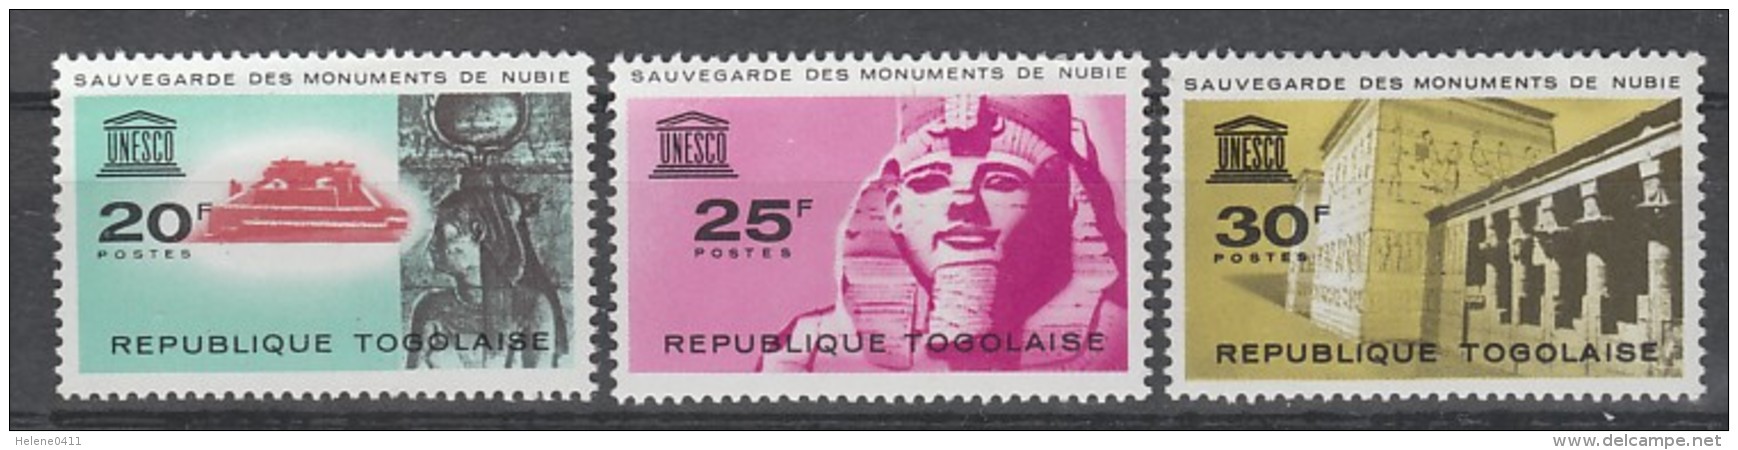 SERIE NEUVE DU TOGO - SAUVEGARDE DES MONUMENTS DE NUBIE N° Y&T 409 A 411 - Egyptology